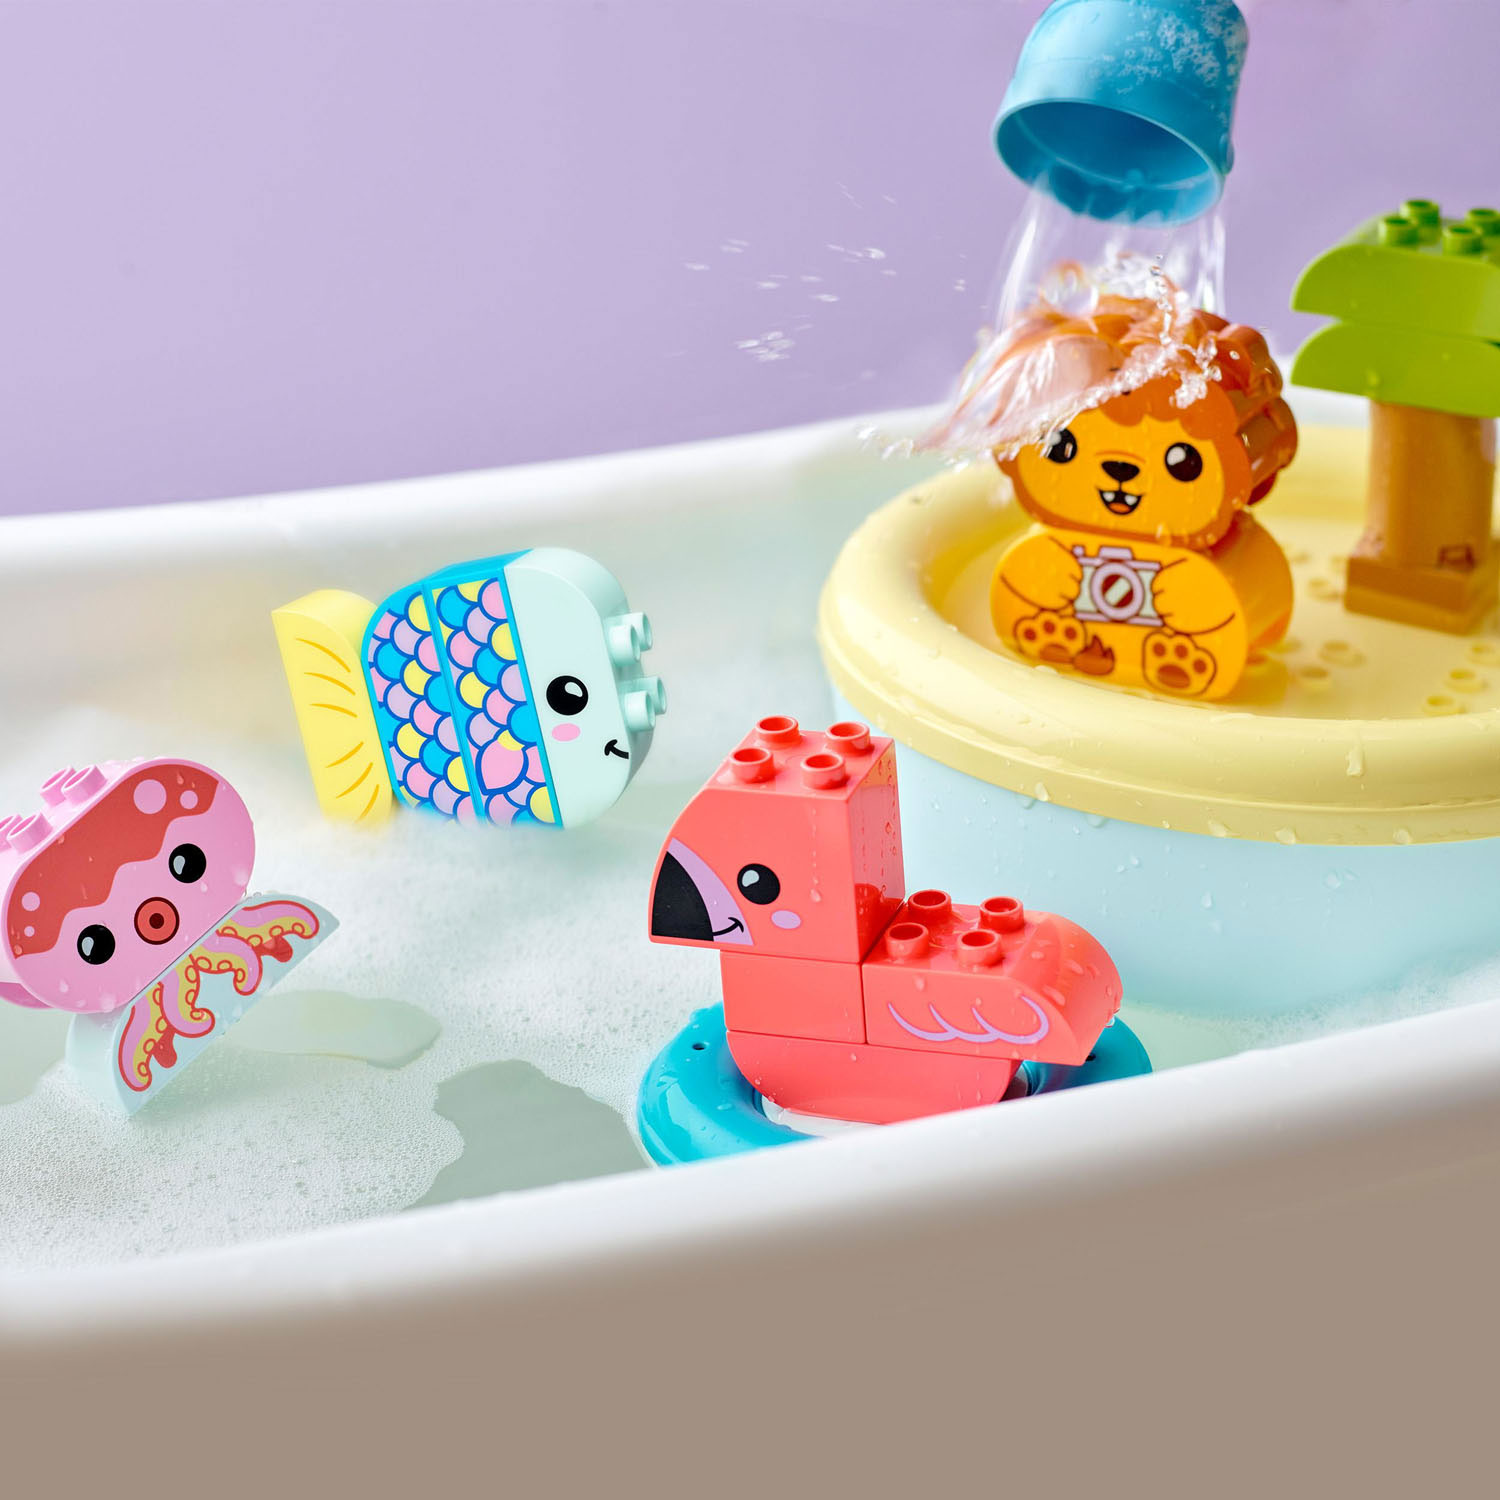 LEGO Duplo 10966 S'amuser dans le bain : l'île des animaux flottante